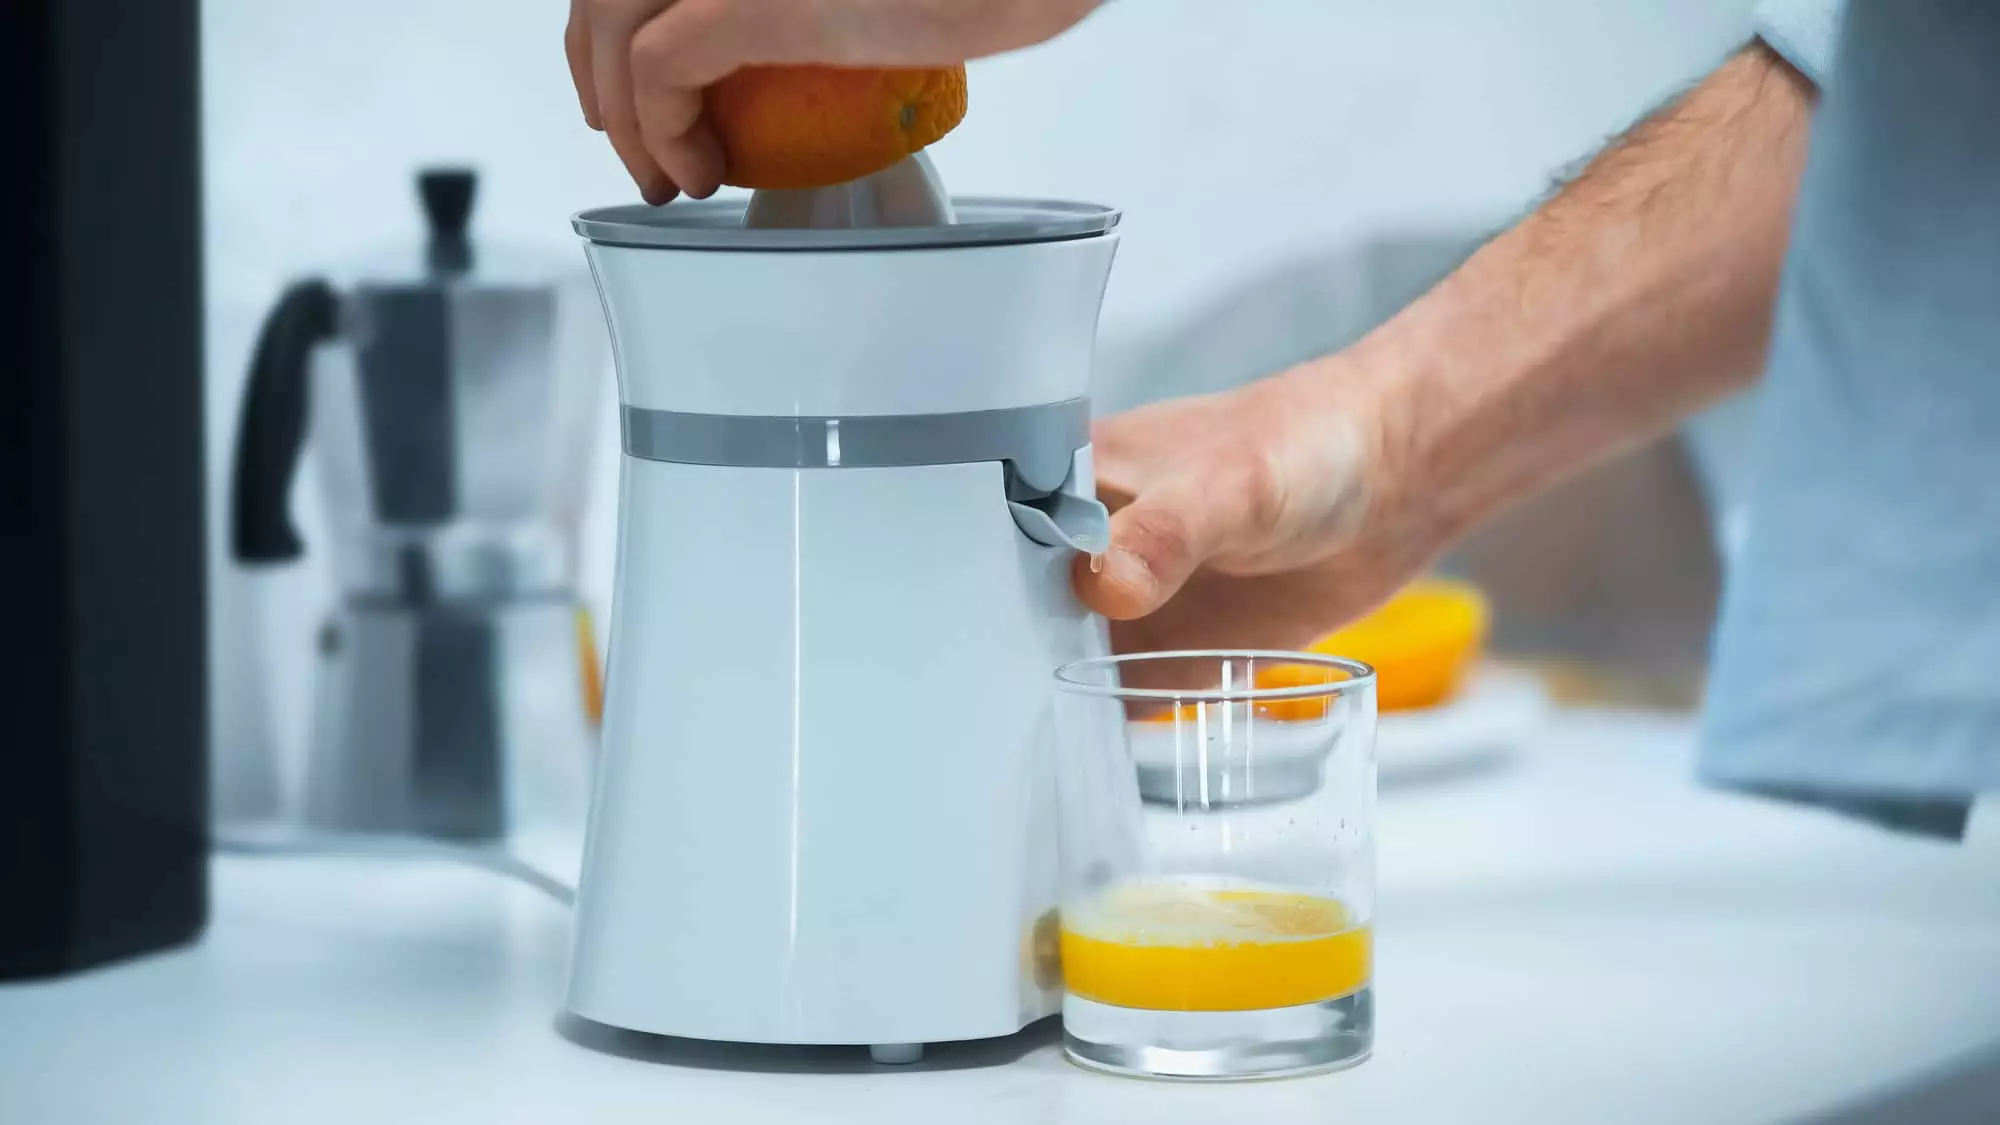 Lumaland Presse-Oranges et à Fruits Agrumes Efficace avec Un Levier mécanique et Ergonomique pour extraire Le jus Facile à Nettoyer